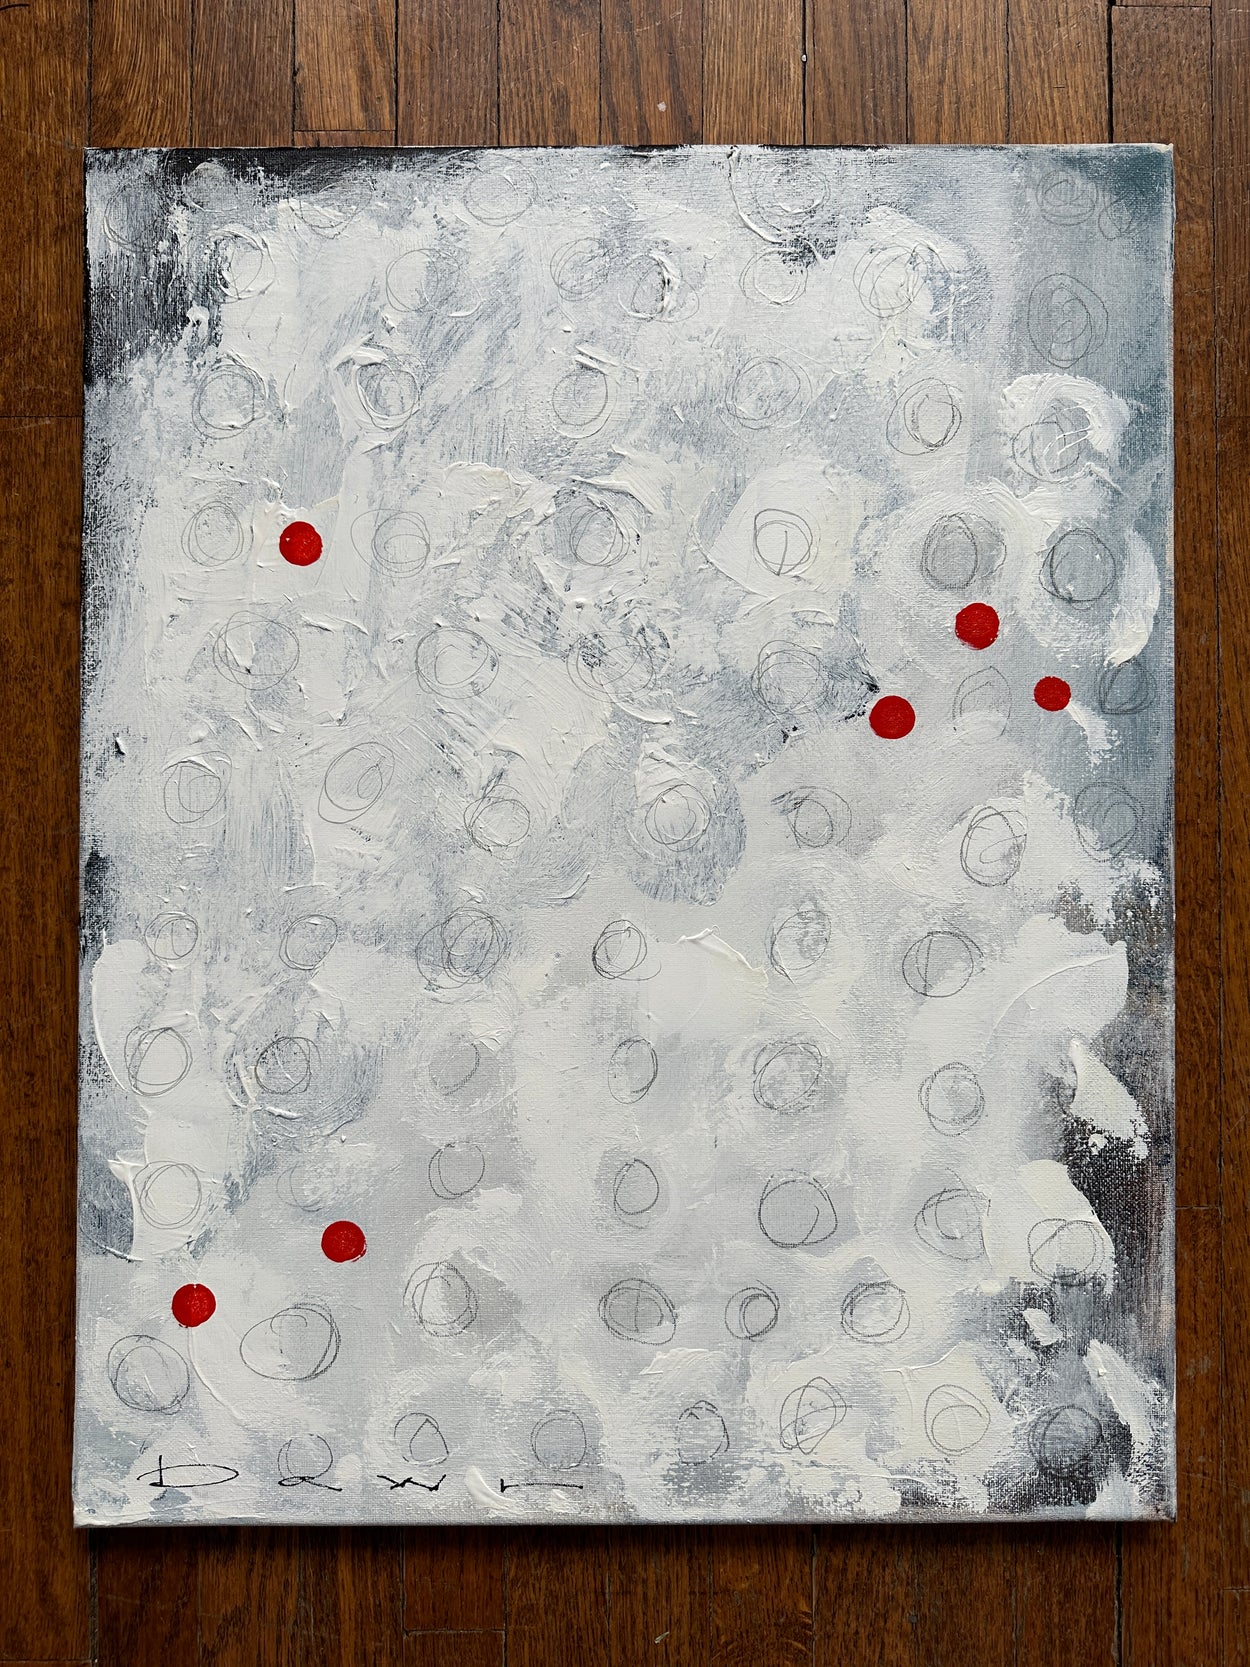 16”x20” acrylic on canvas